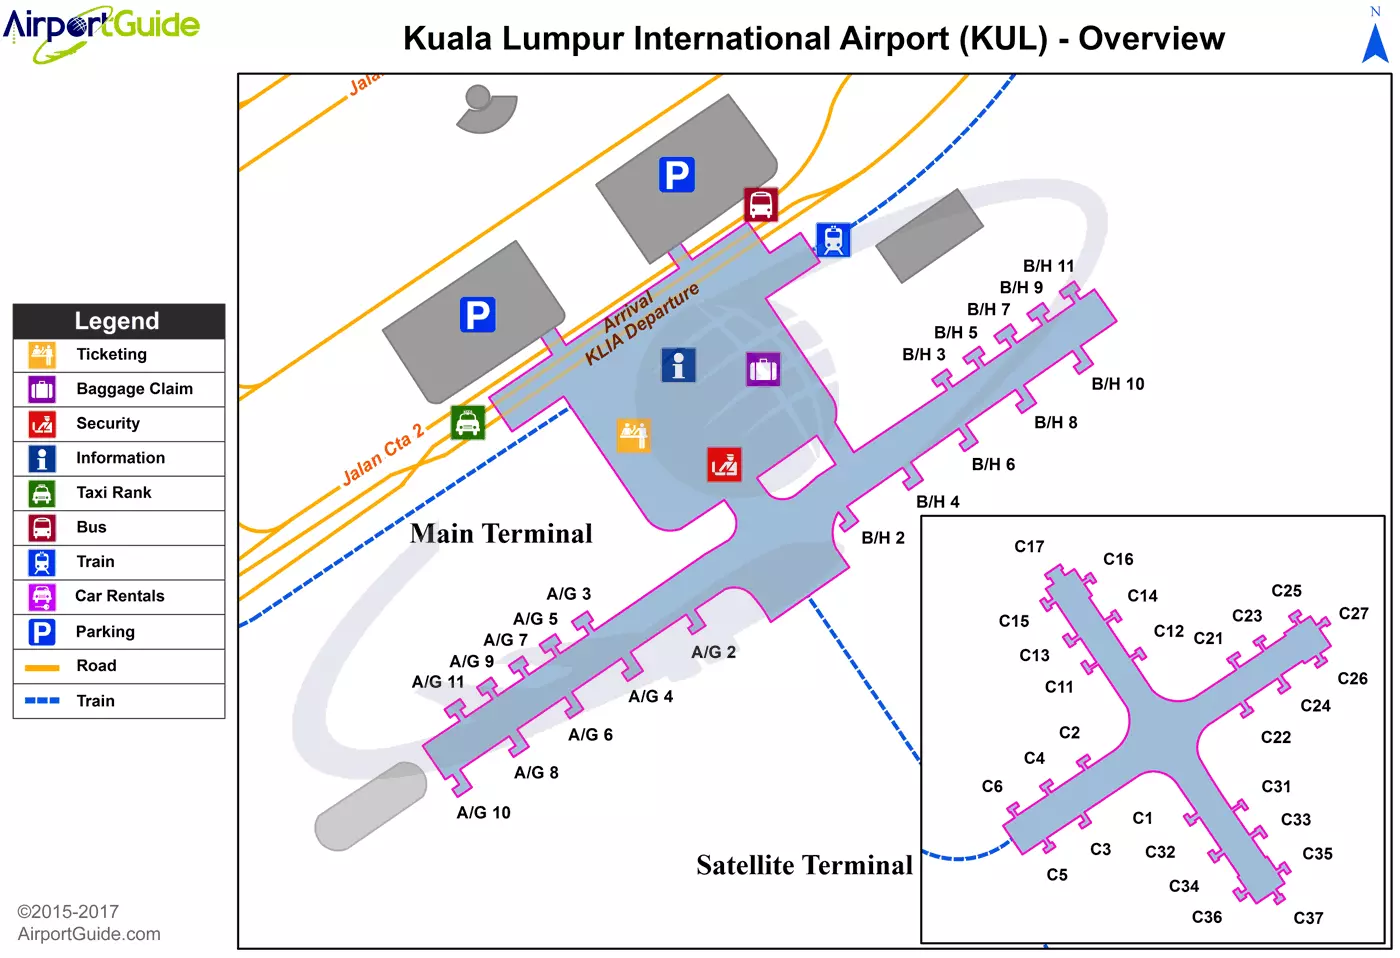 Как добраться до куала-лумпура: на самолете, поезде, автомобиле или автобусе